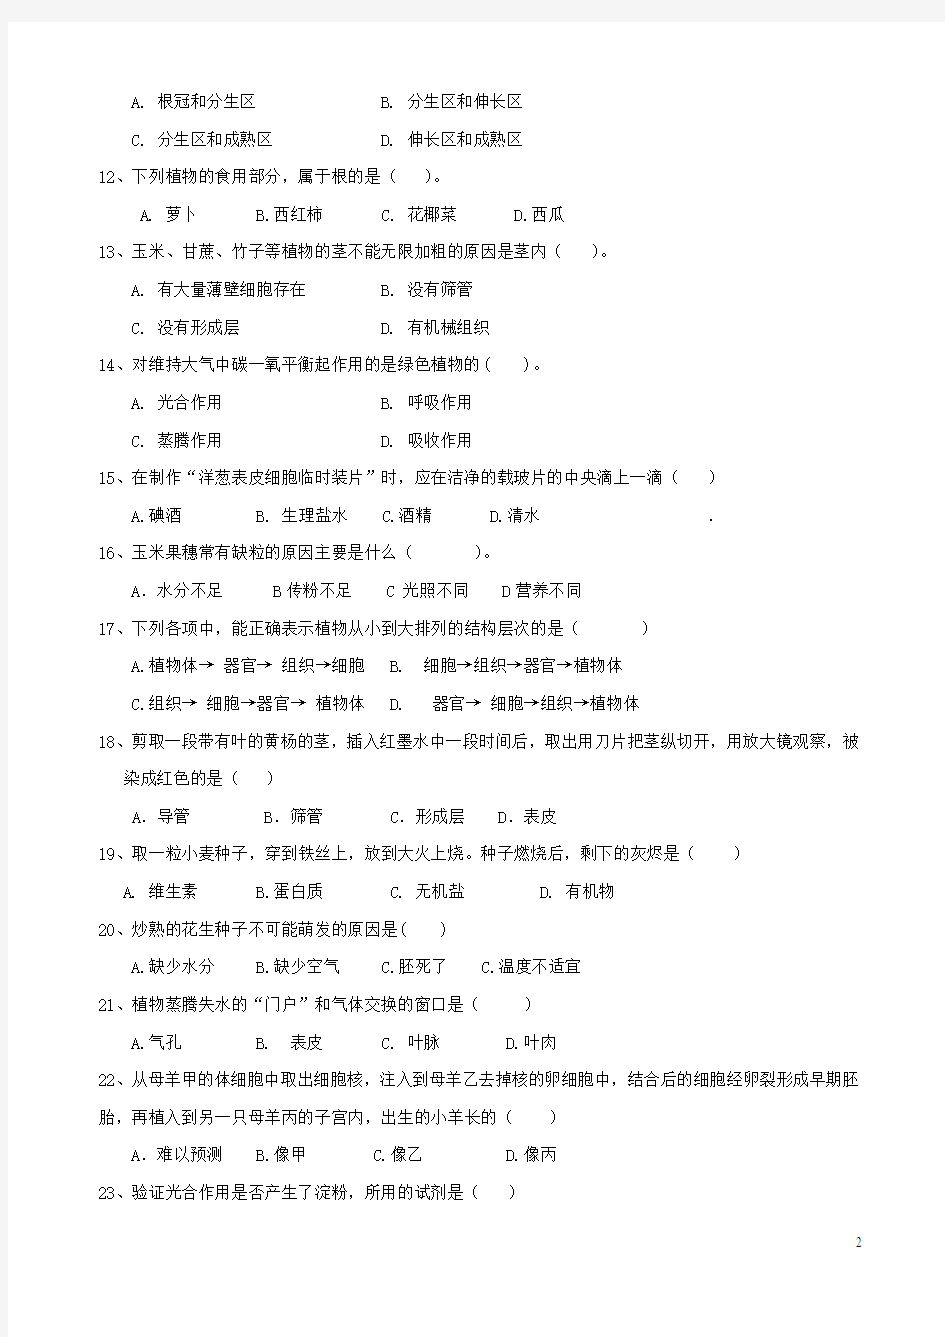 福建省福鼎市十校联合体2013-2014学年七年级生物上学期期末考试试题